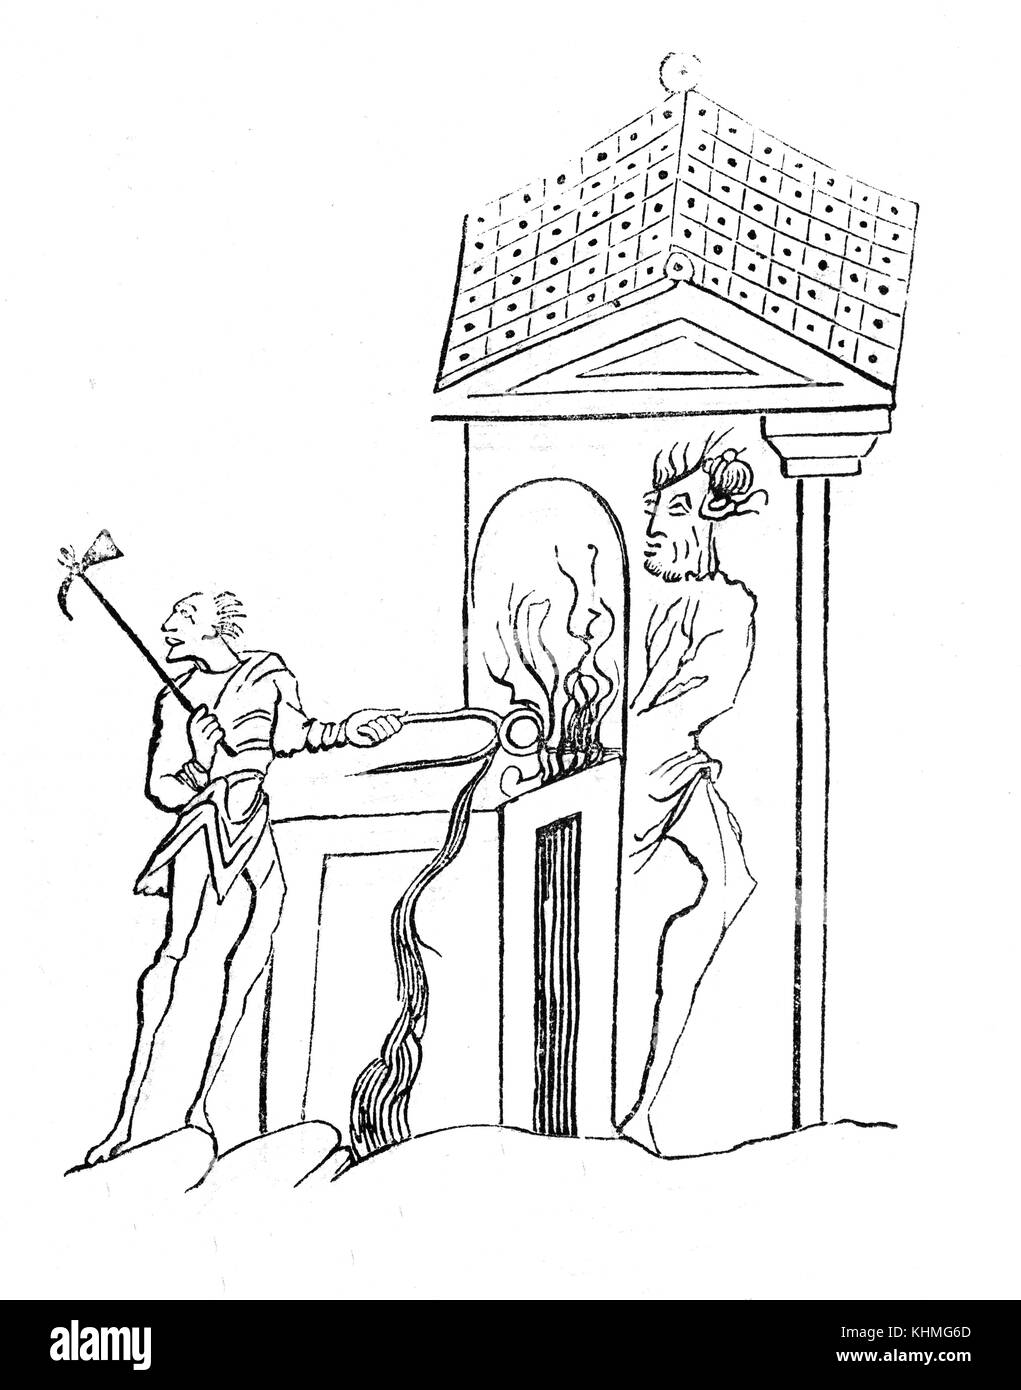 Un Anglo-Saxon Smithy dans 9e siècle en Angleterre.Les compétences et les processus de travail de fer étaient un mystère pour la plupart des gens dans l'antiquité et étaient considérés par les gens superstitieux pour être qualifiés et magique dans la smiths mythes et légendes de l'anglo-saxonne. Le fer à repasser Fer à cheval - l'un des produits typiques de la Smith - est toujours considéré comme un symbole magique' aujourd'hui et s'est accroché aux murs et portes pour porter chance . Banque D'Images